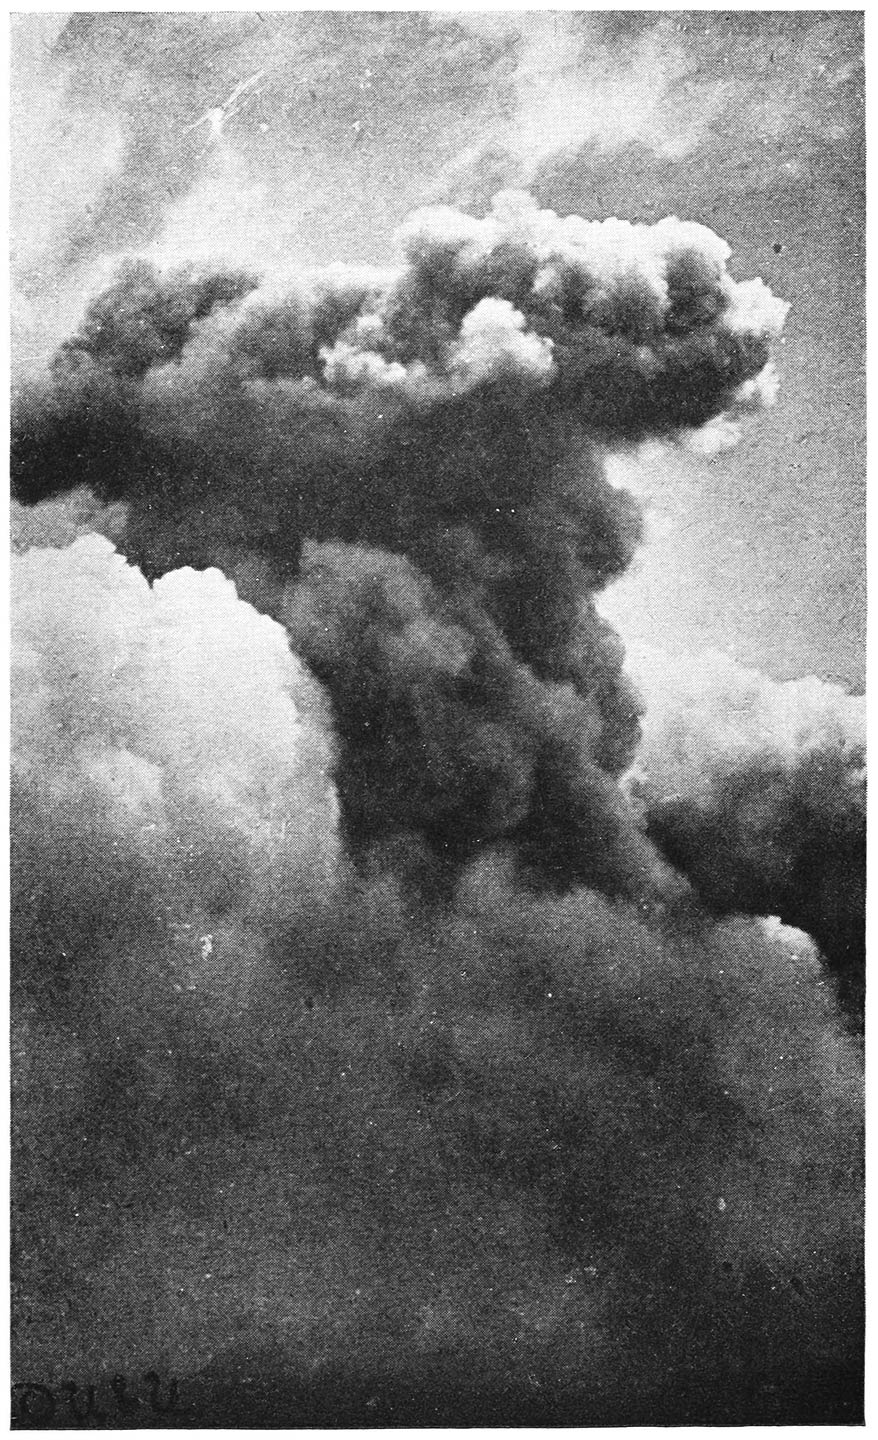 SMOKE COLUMN OVER MT. PELÉE, MARTINIQUE, 1902